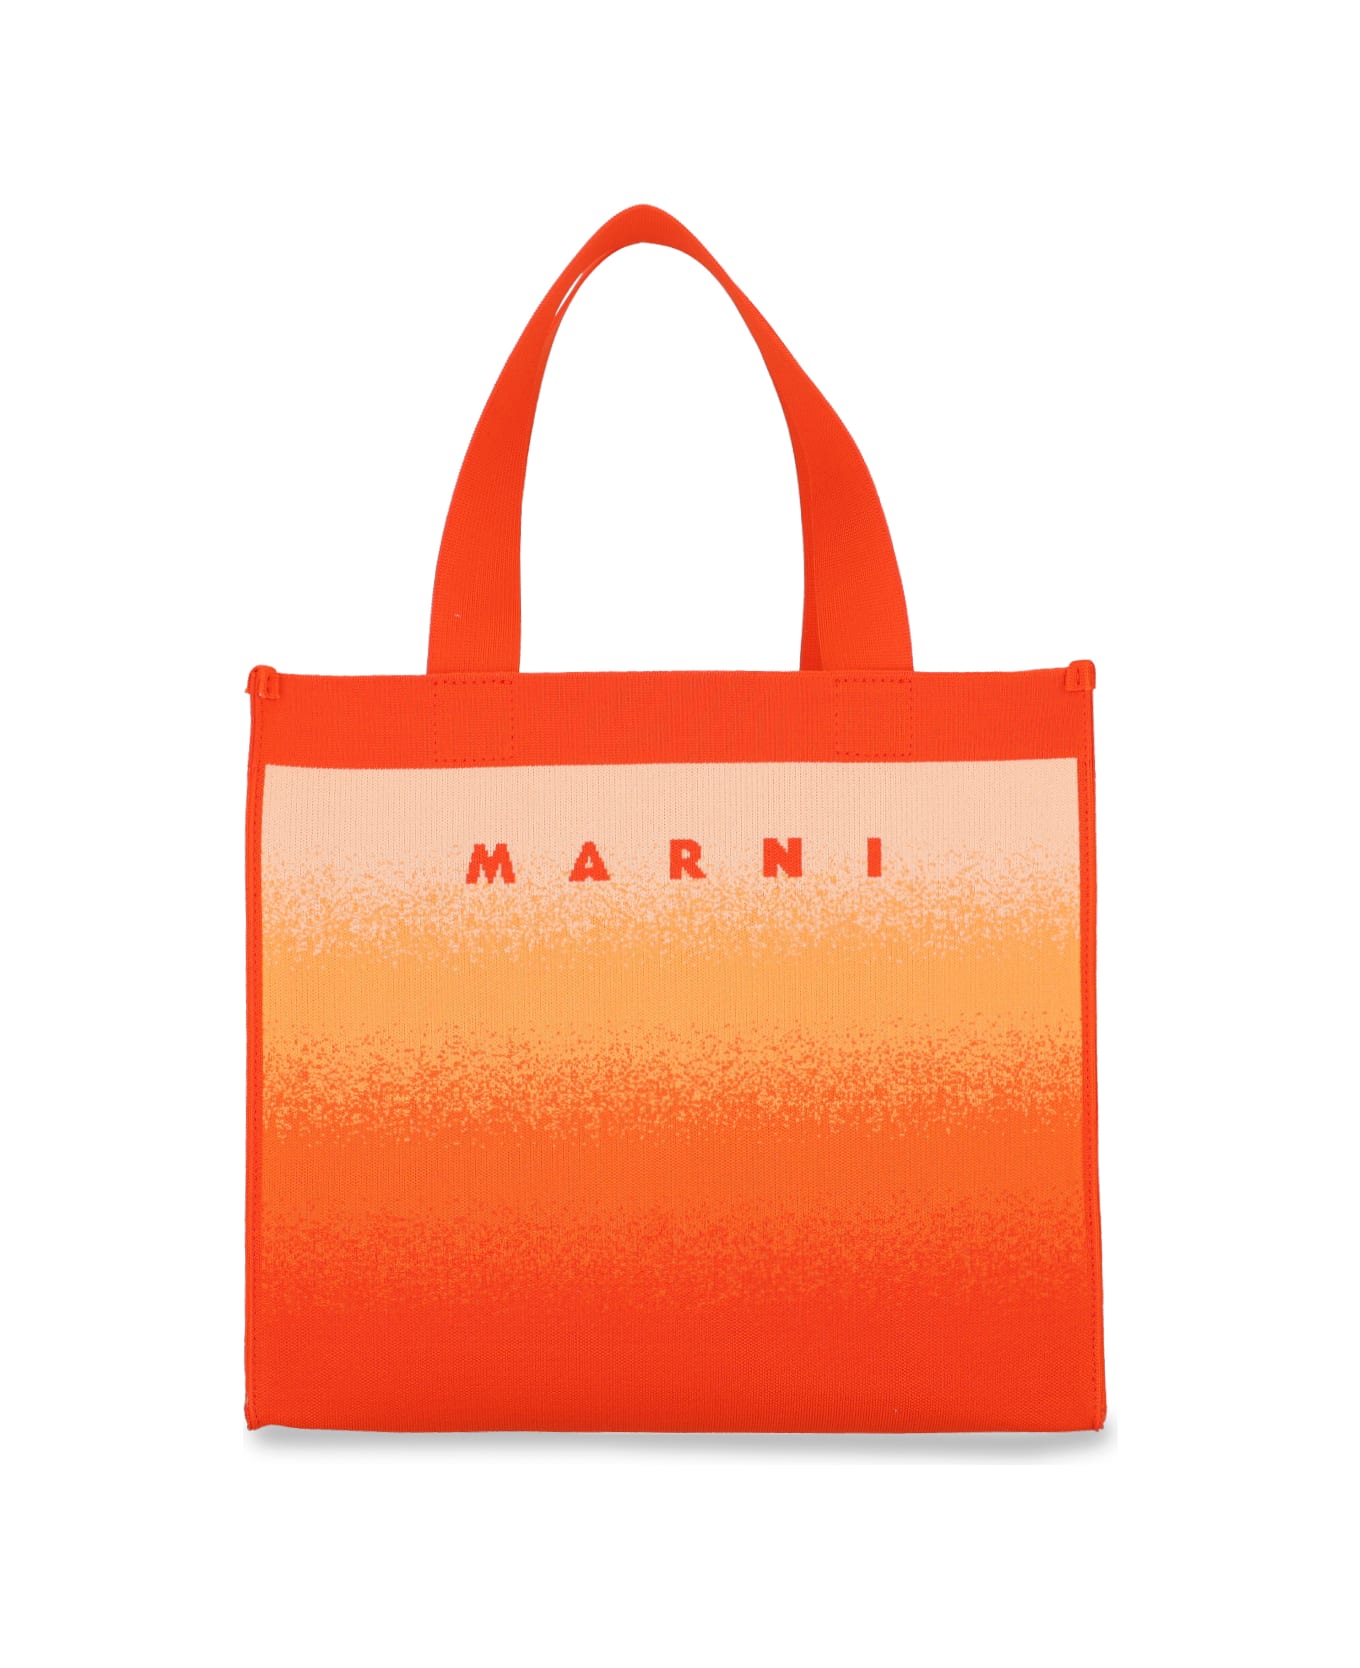 Marni Tote - Orange